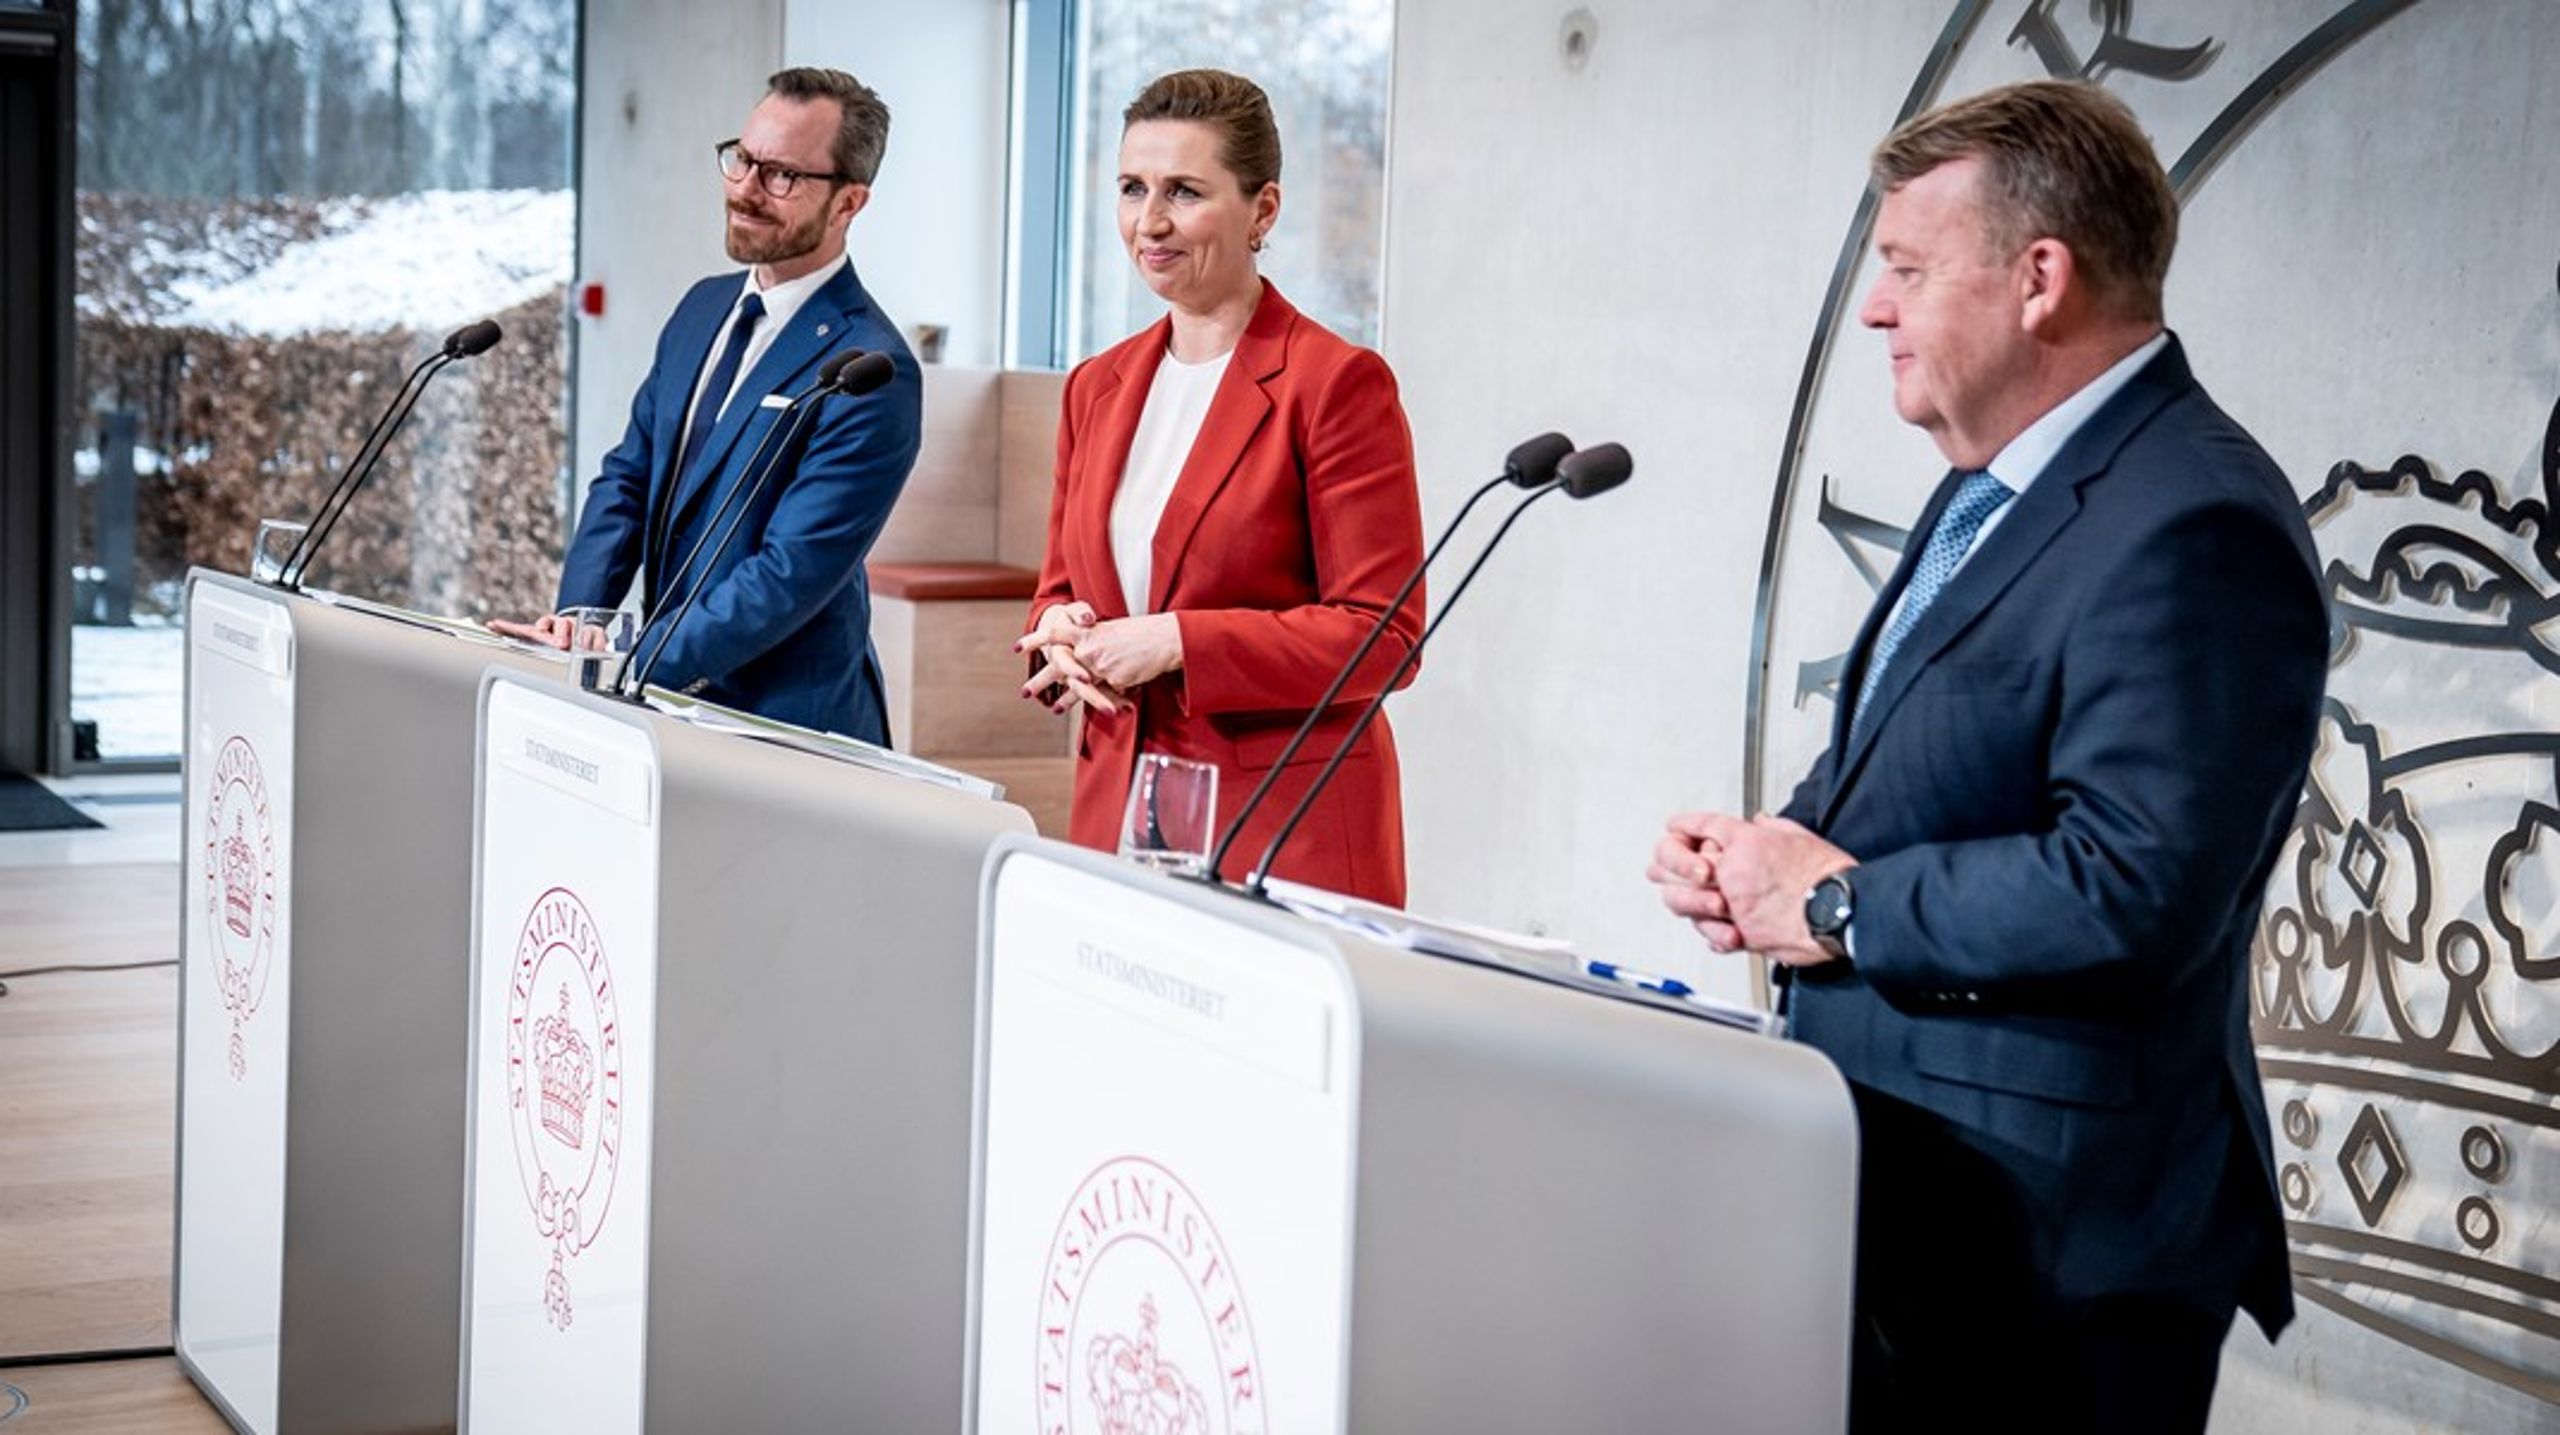 "Der vil stadig være arbejdsudbudsreformer, jeg vil være imod," sagde Mette Frederiksen (S), da hun tirsdag præsenterede sit nye regeringsgrundlag på Marienborg med Jakob Ellemann-Jensen (V) og Lars Løkke Rasmussen (M).